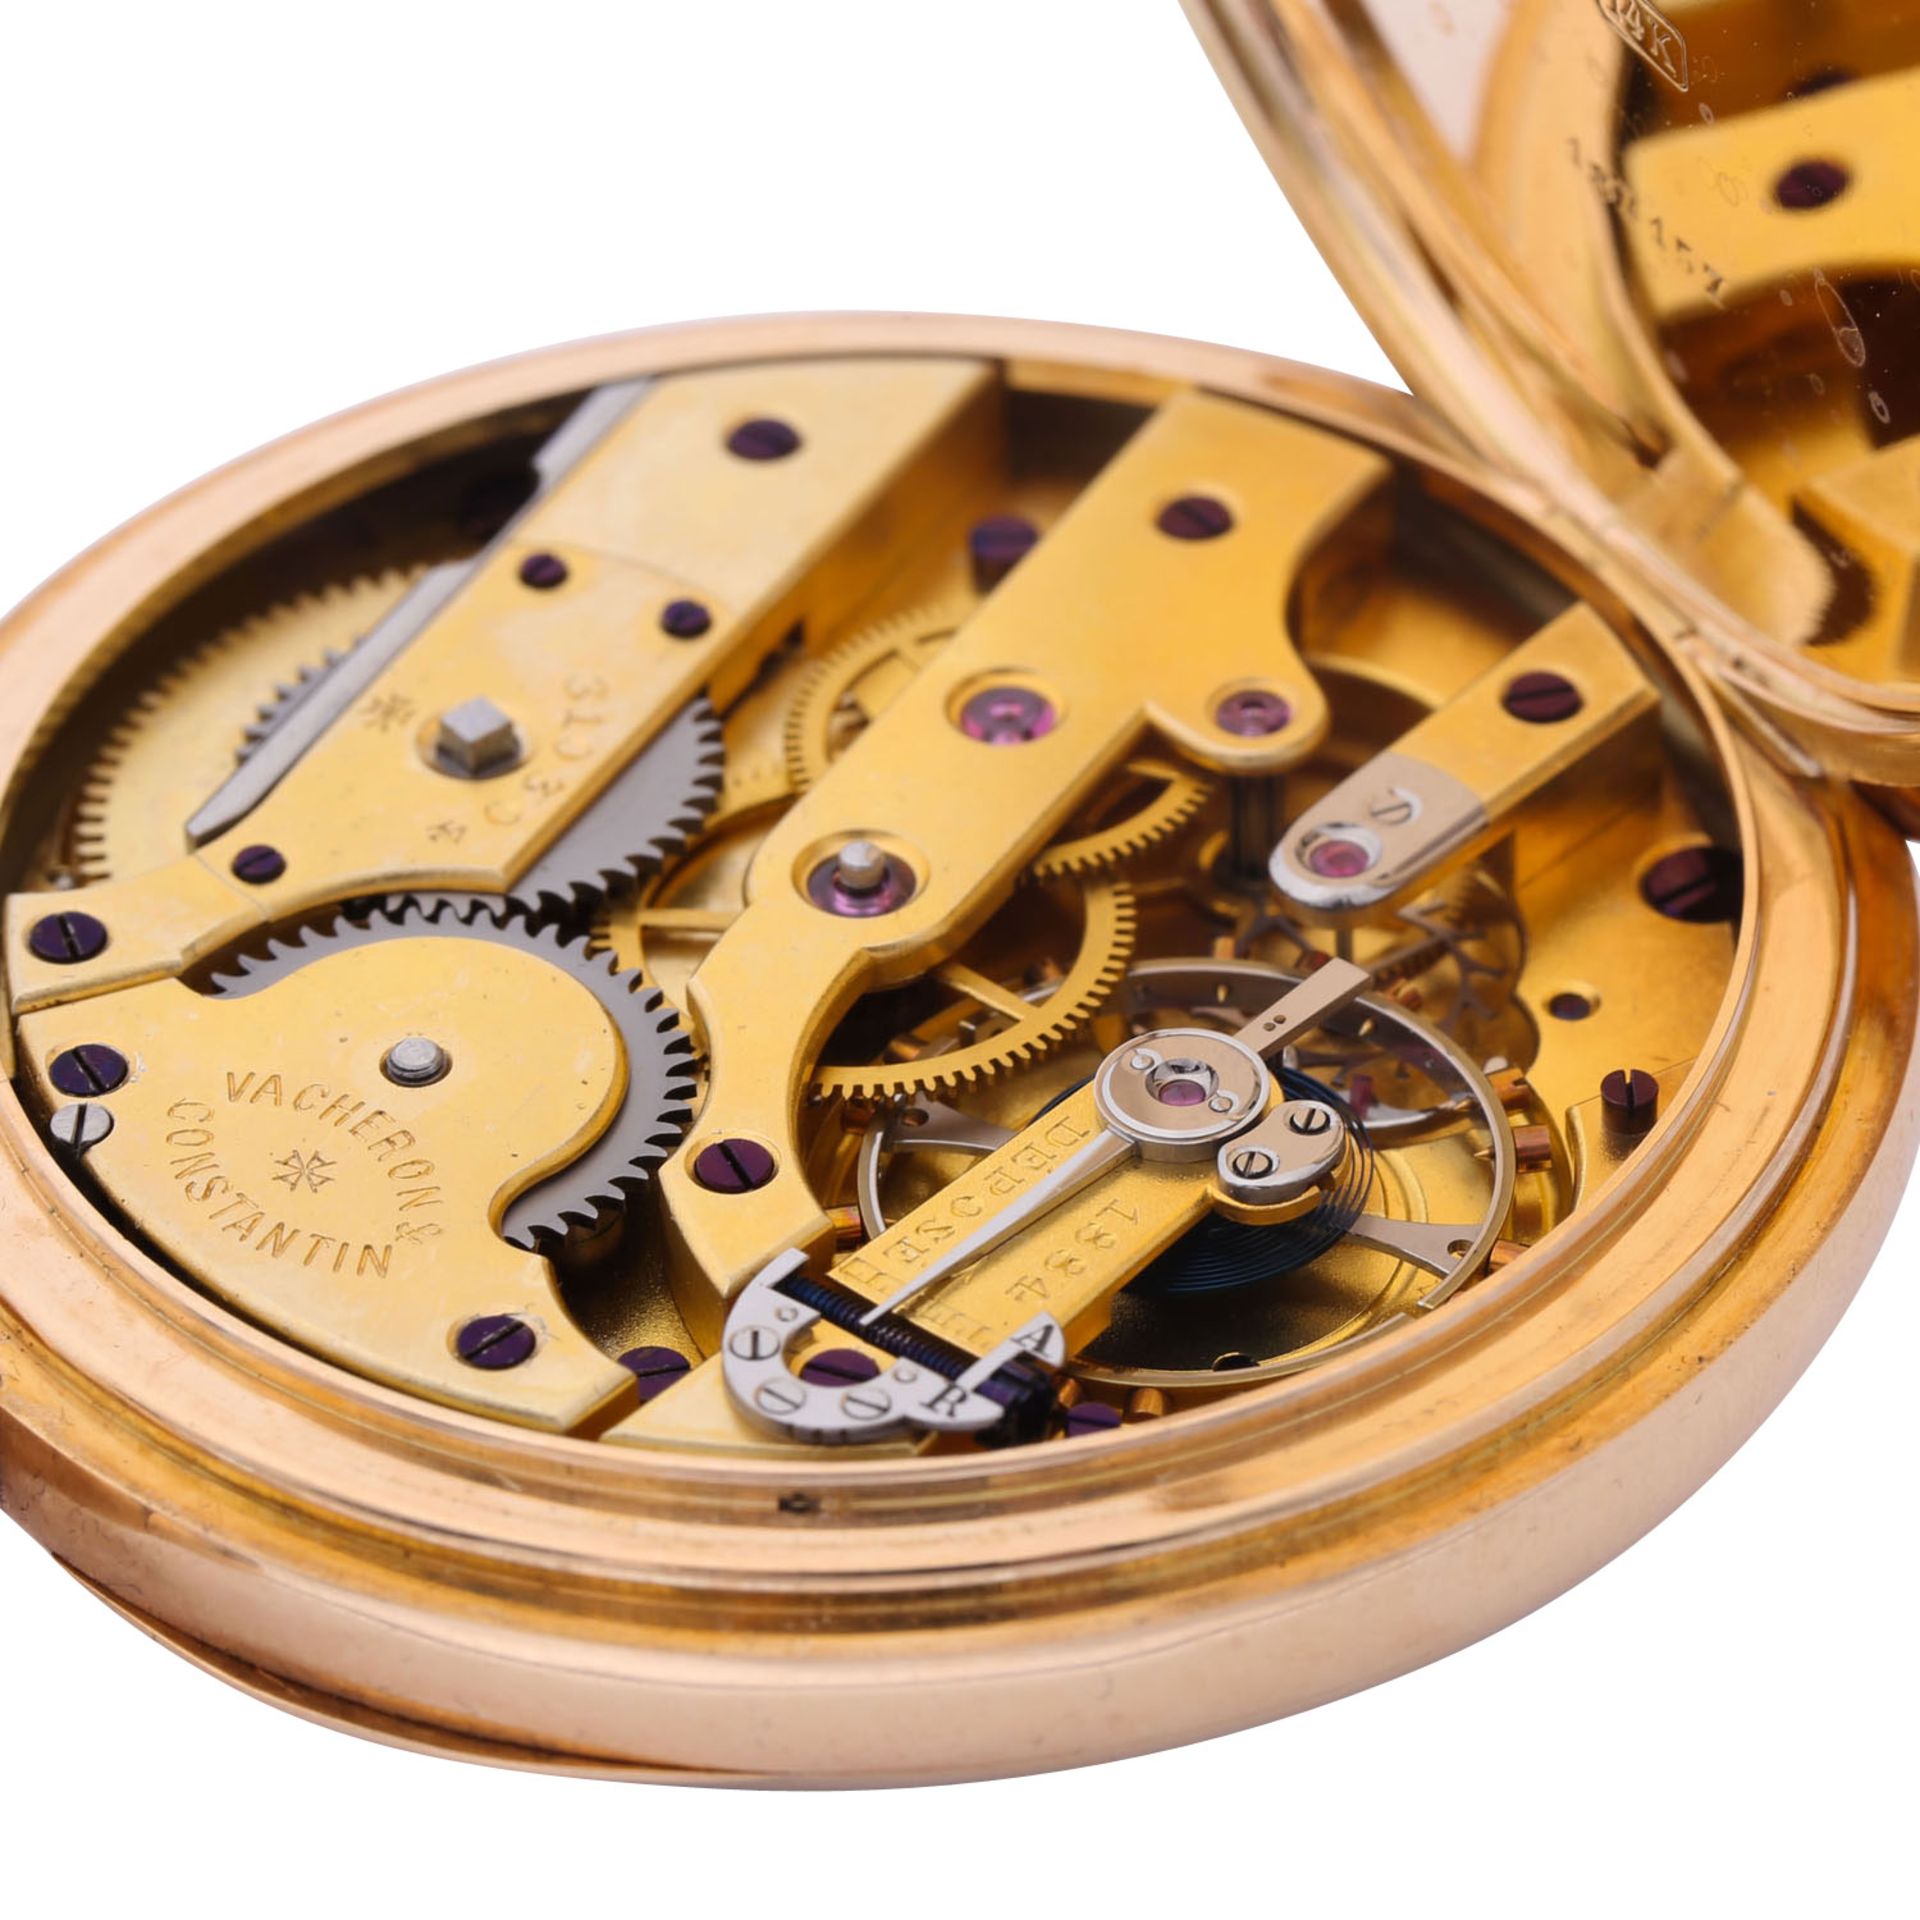 VACHERON CONSTANTIN seltene "Demi-Chronometre" offene Taschenuhr. Schweiz um 1900. - Bild 5 aus 10